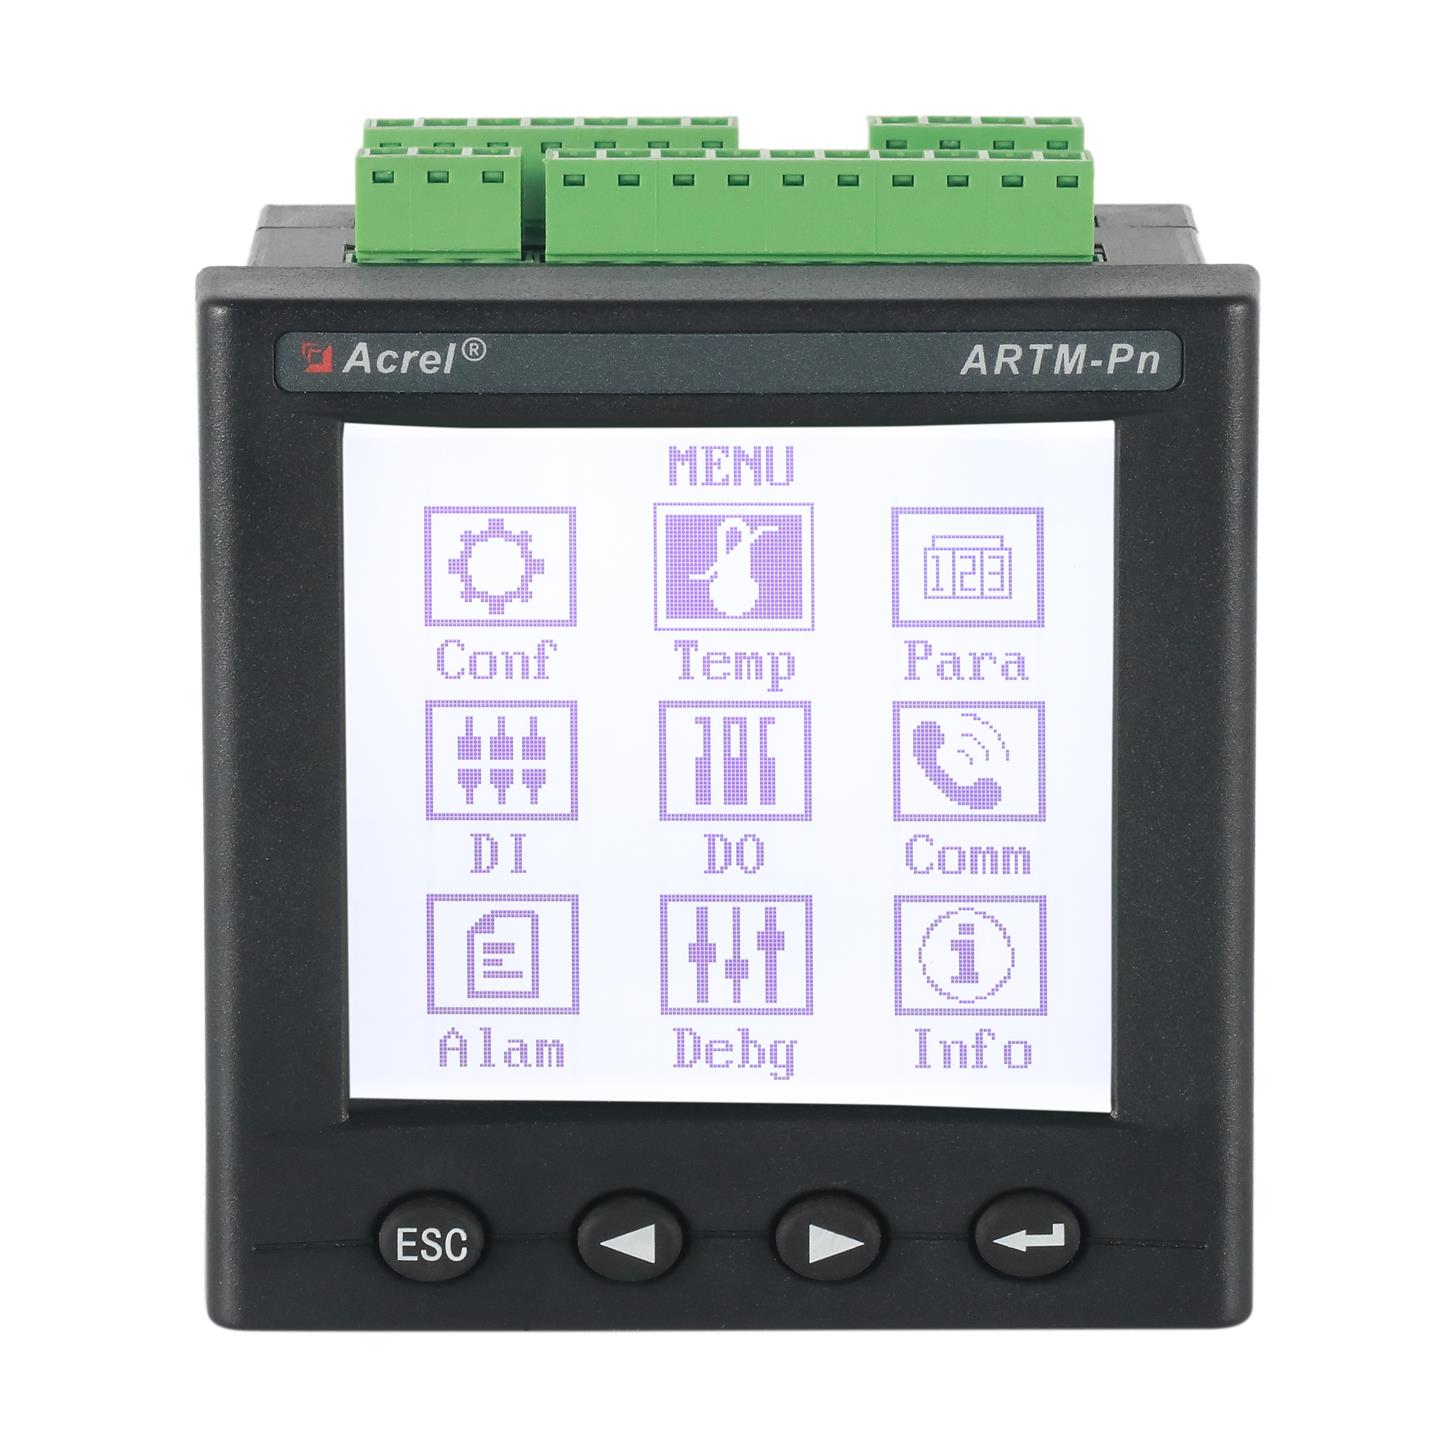 安科瑞ARTM-Pn高压柜 低压柜 无线测温装置 采集传感器RS485通讯